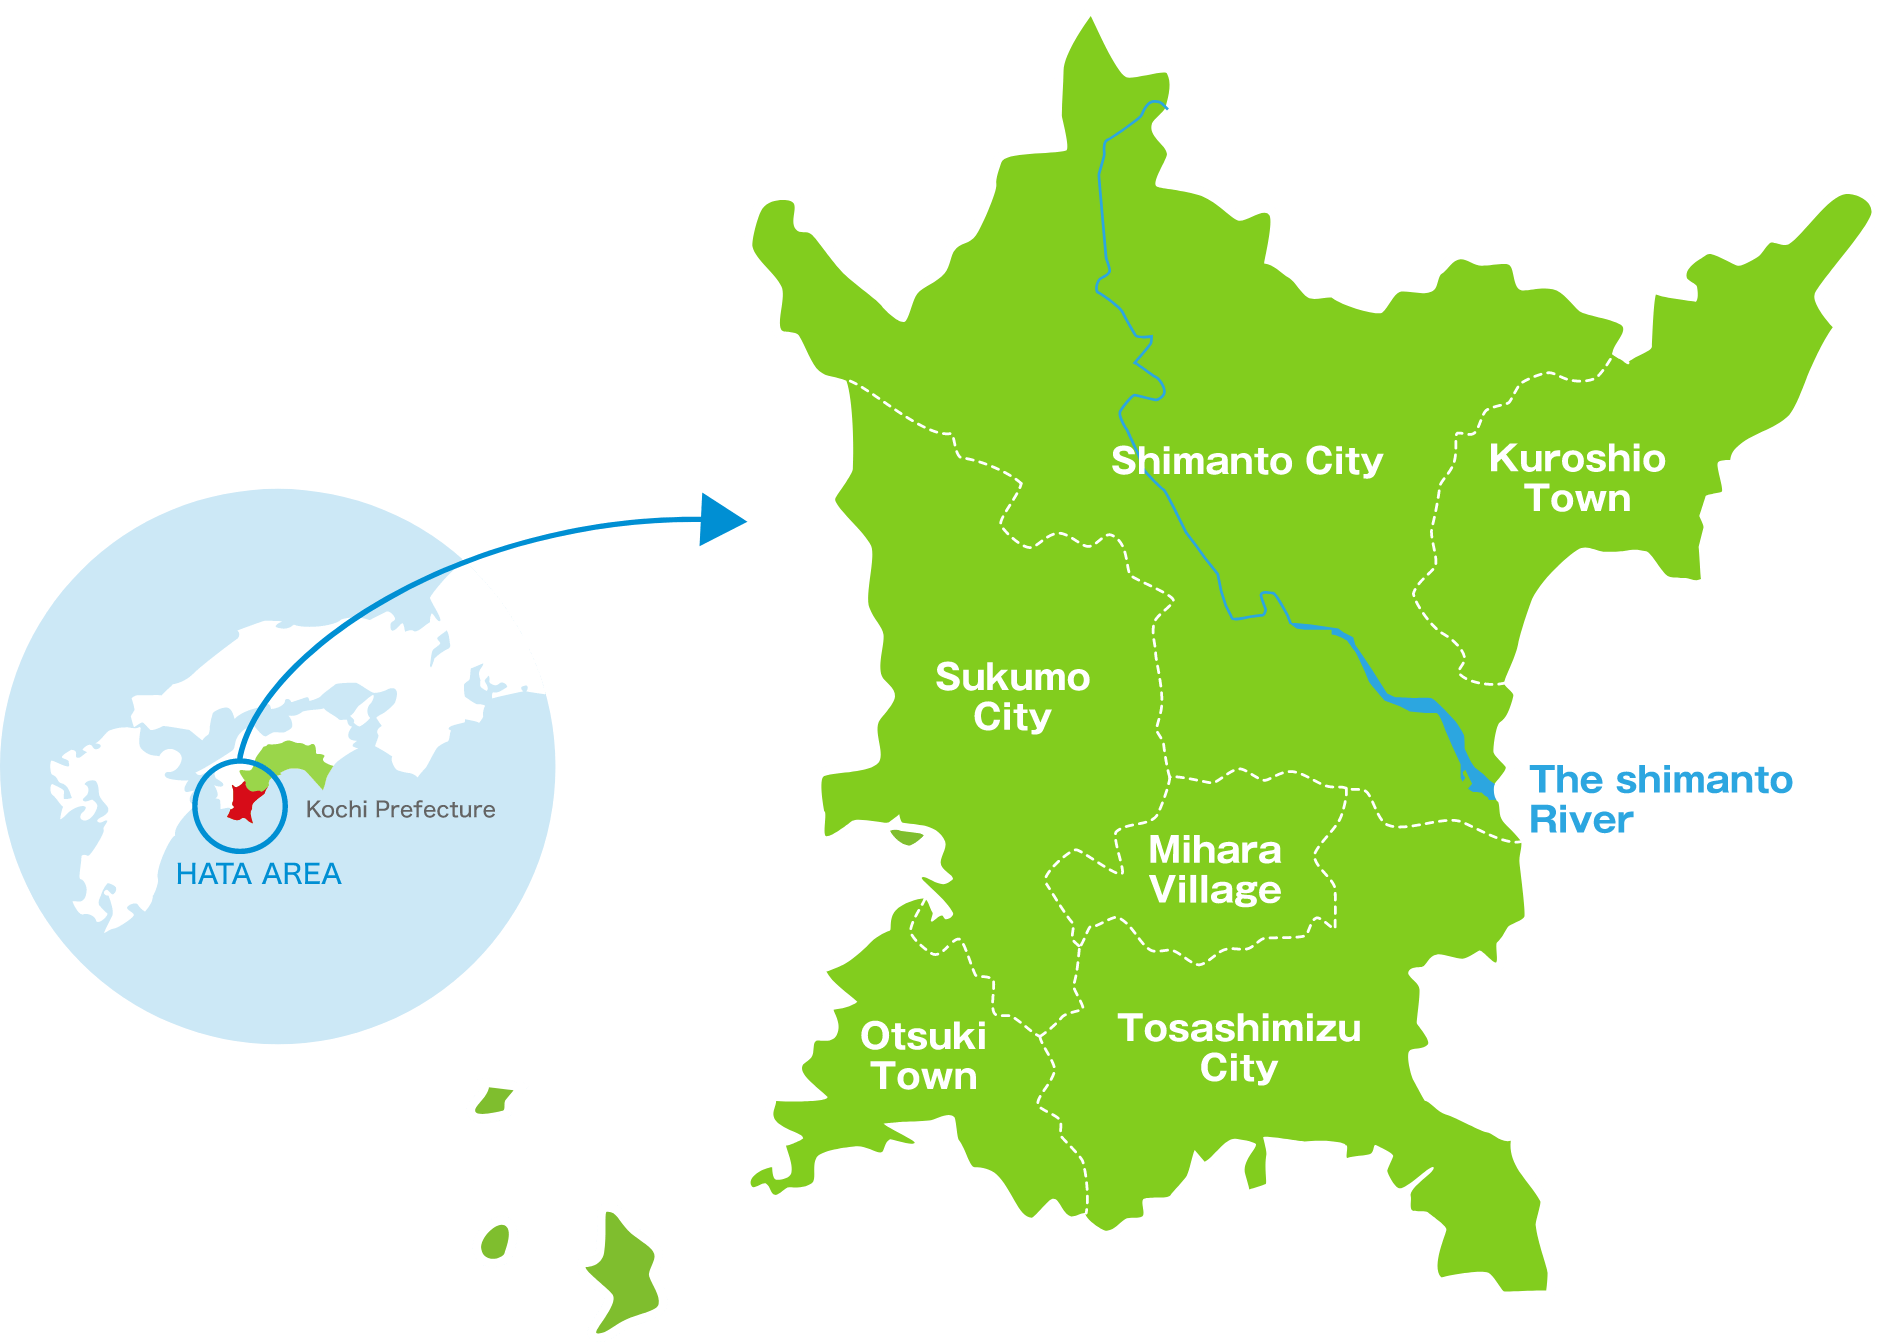 The Hata Area of Southwestern Kochi Prefecture